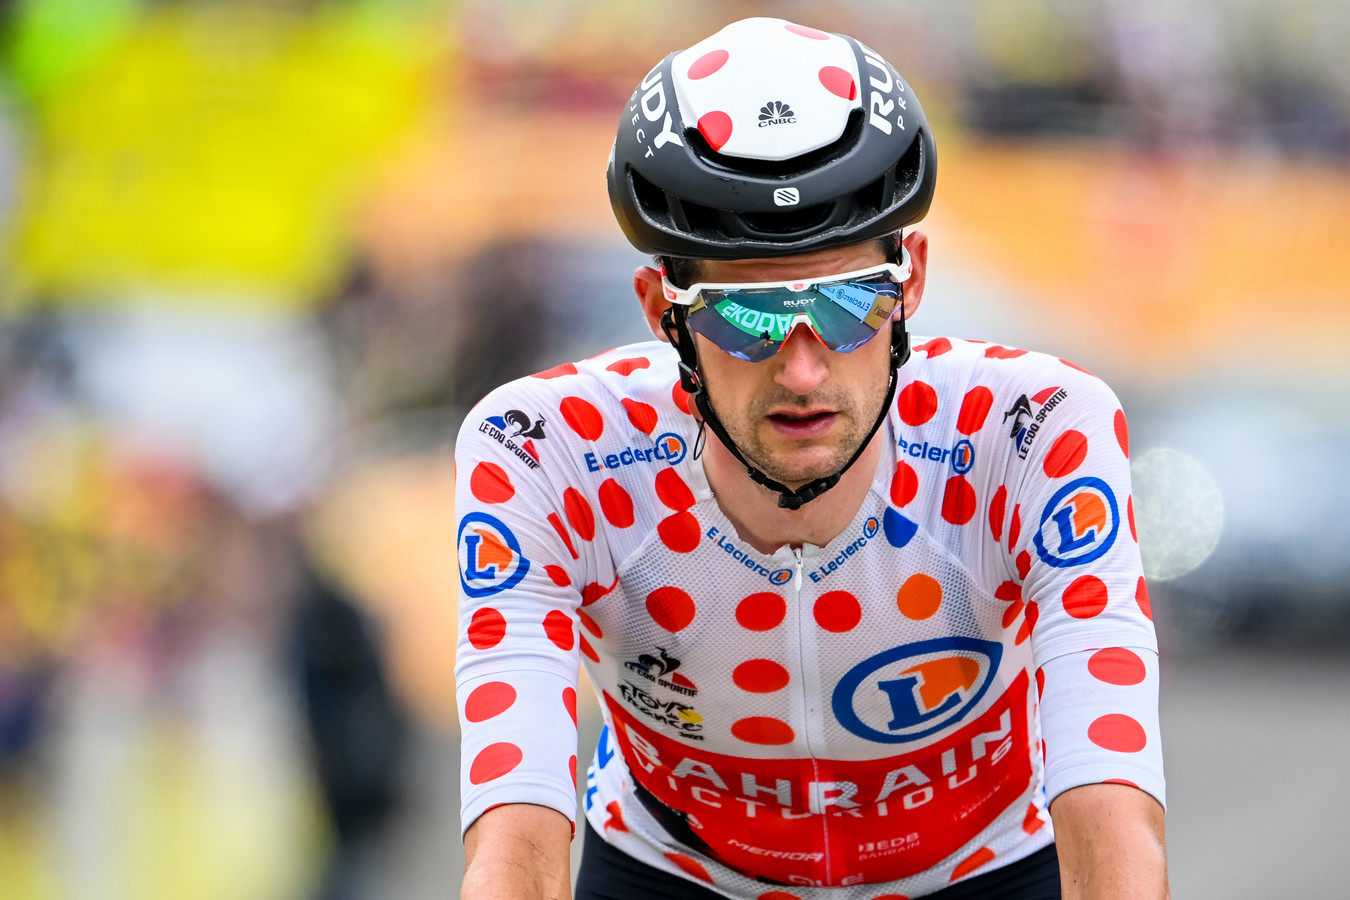 Wout Poels reed deze zomer in de Tour de France lang rond in de bolletjestrui.